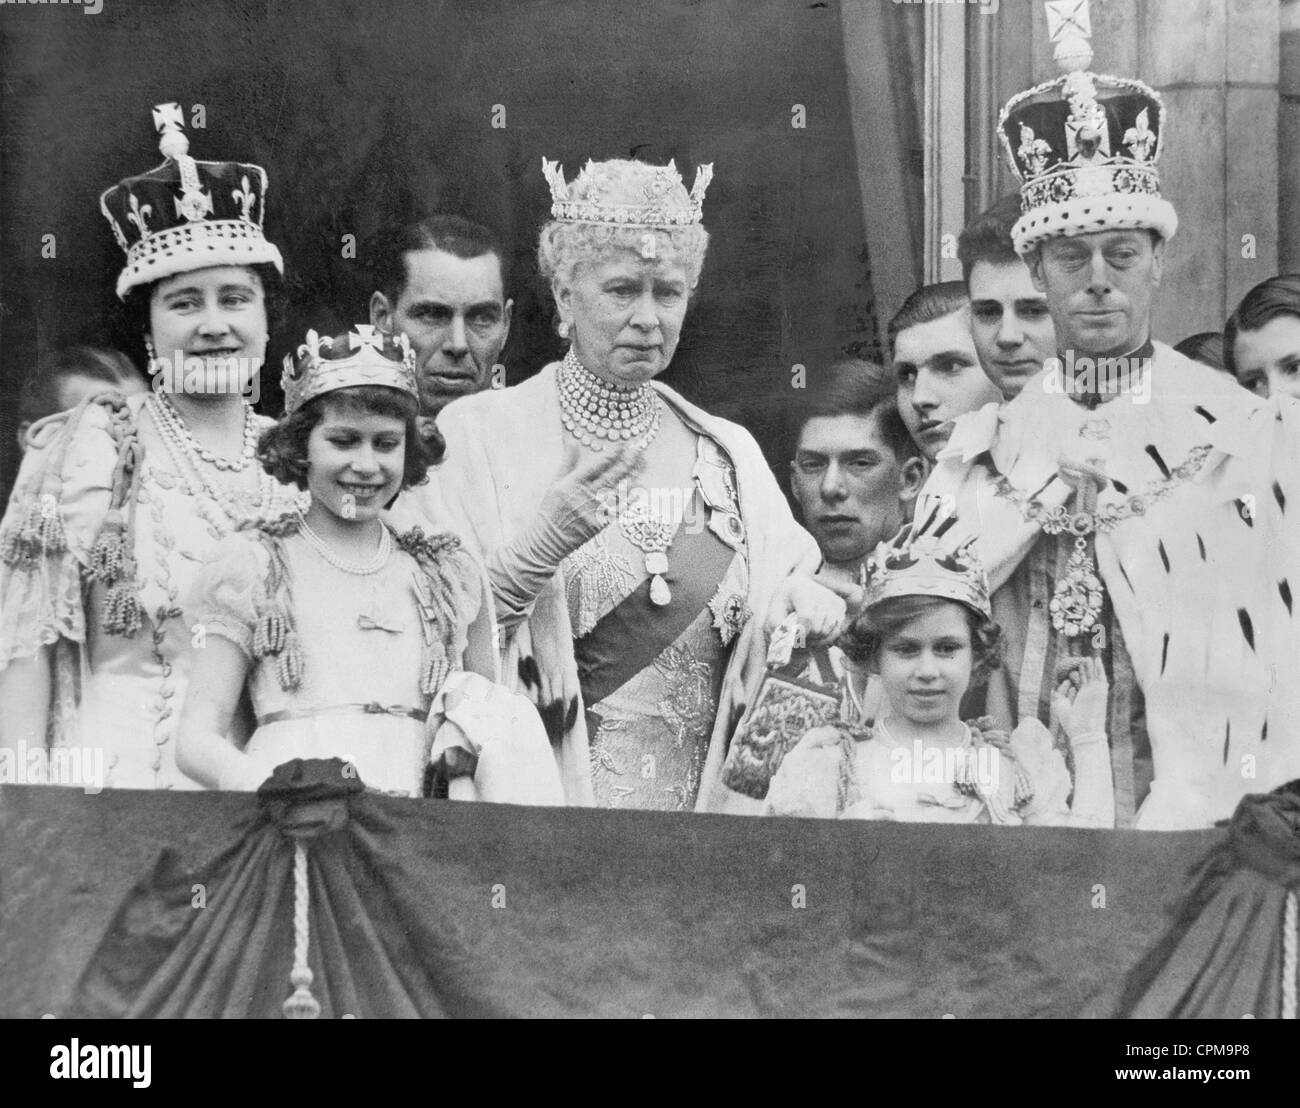 La famille royale sur le balcon de la palais de Buckingham, 1937 Banque D'Images